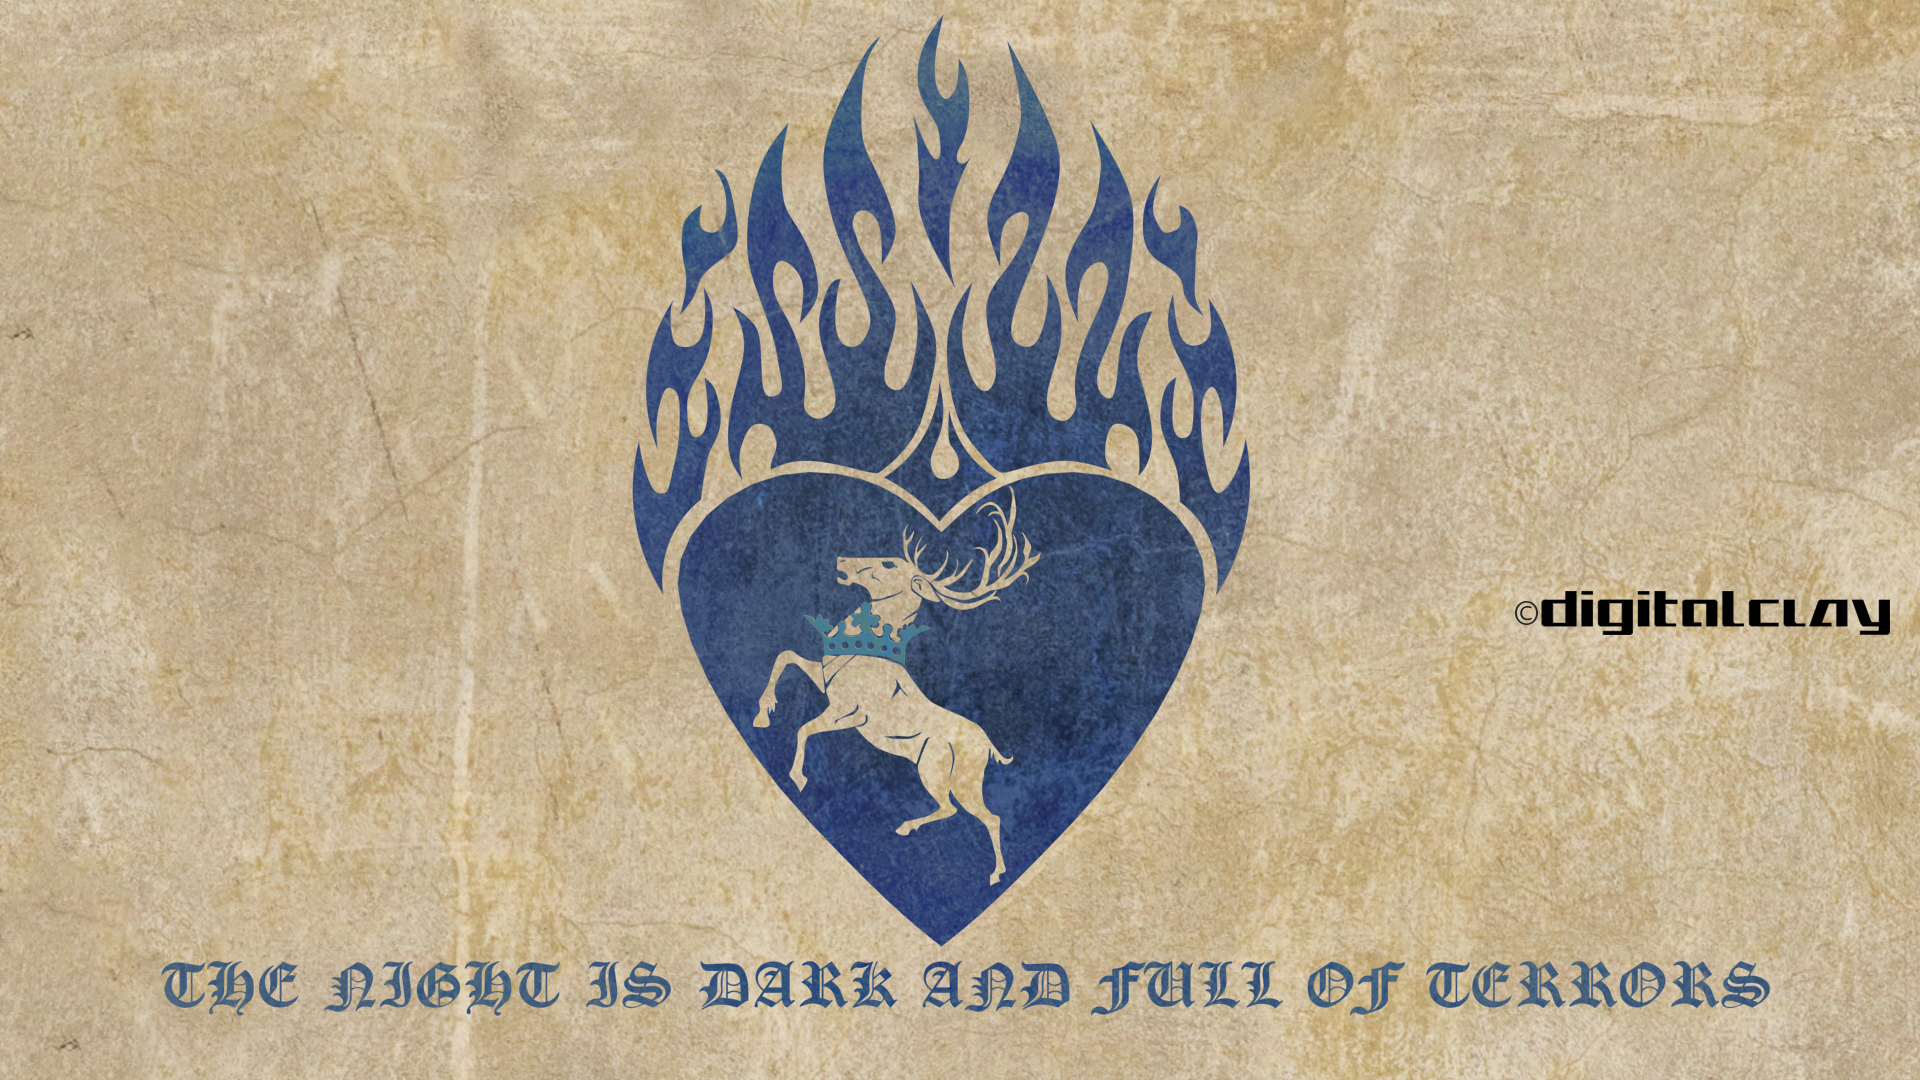 Stannis Baratheon's Banner by mrminutuslausus on DeviantArt